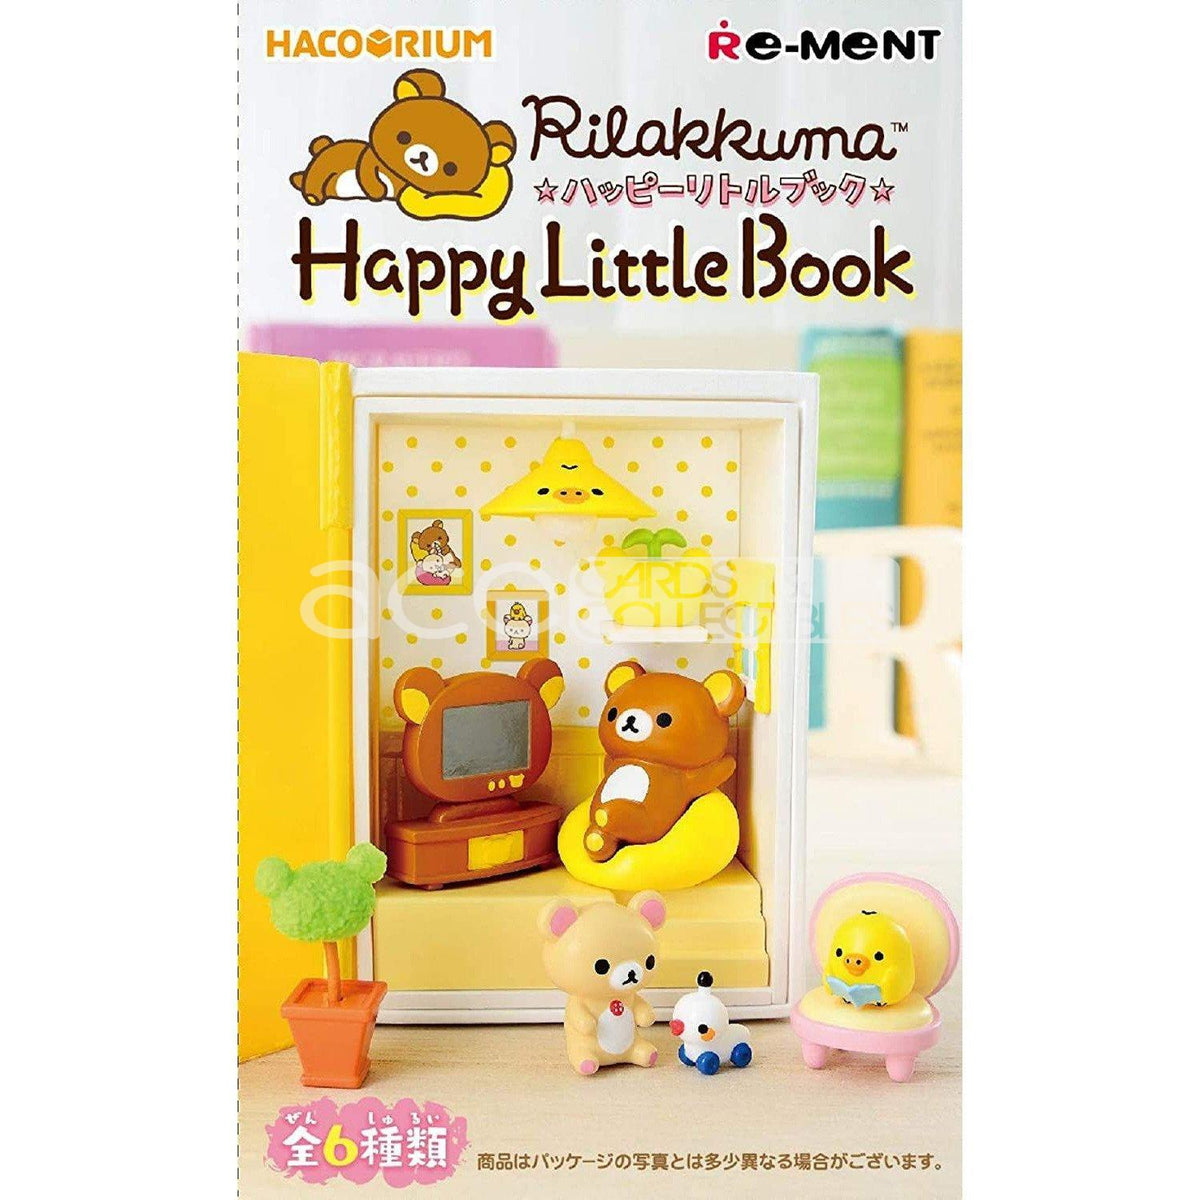 Re-Ment Hacorium Rilakkuma -Happy Little Book-Single (Random)-Re-Ment-Ace Cards &amp; Collectibles